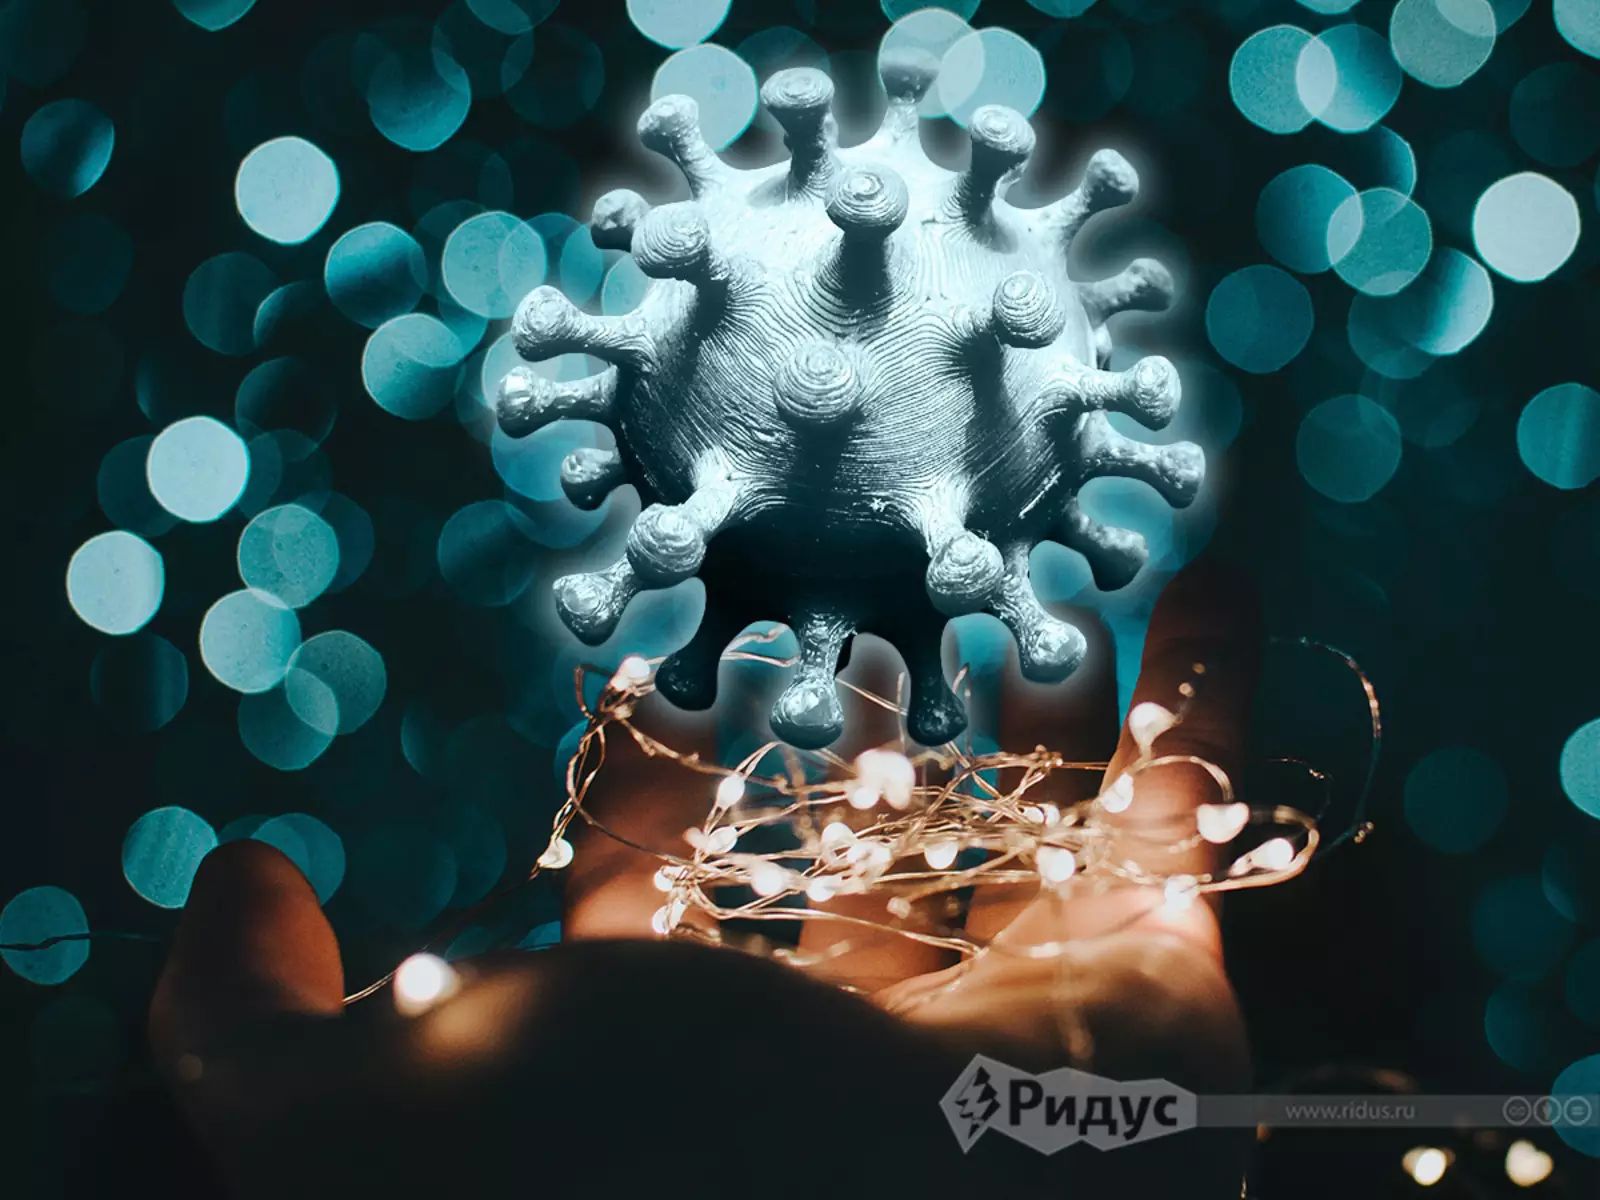 Модель коронавируса © Игорь Ставцев / Коллаж / Ridus.ru